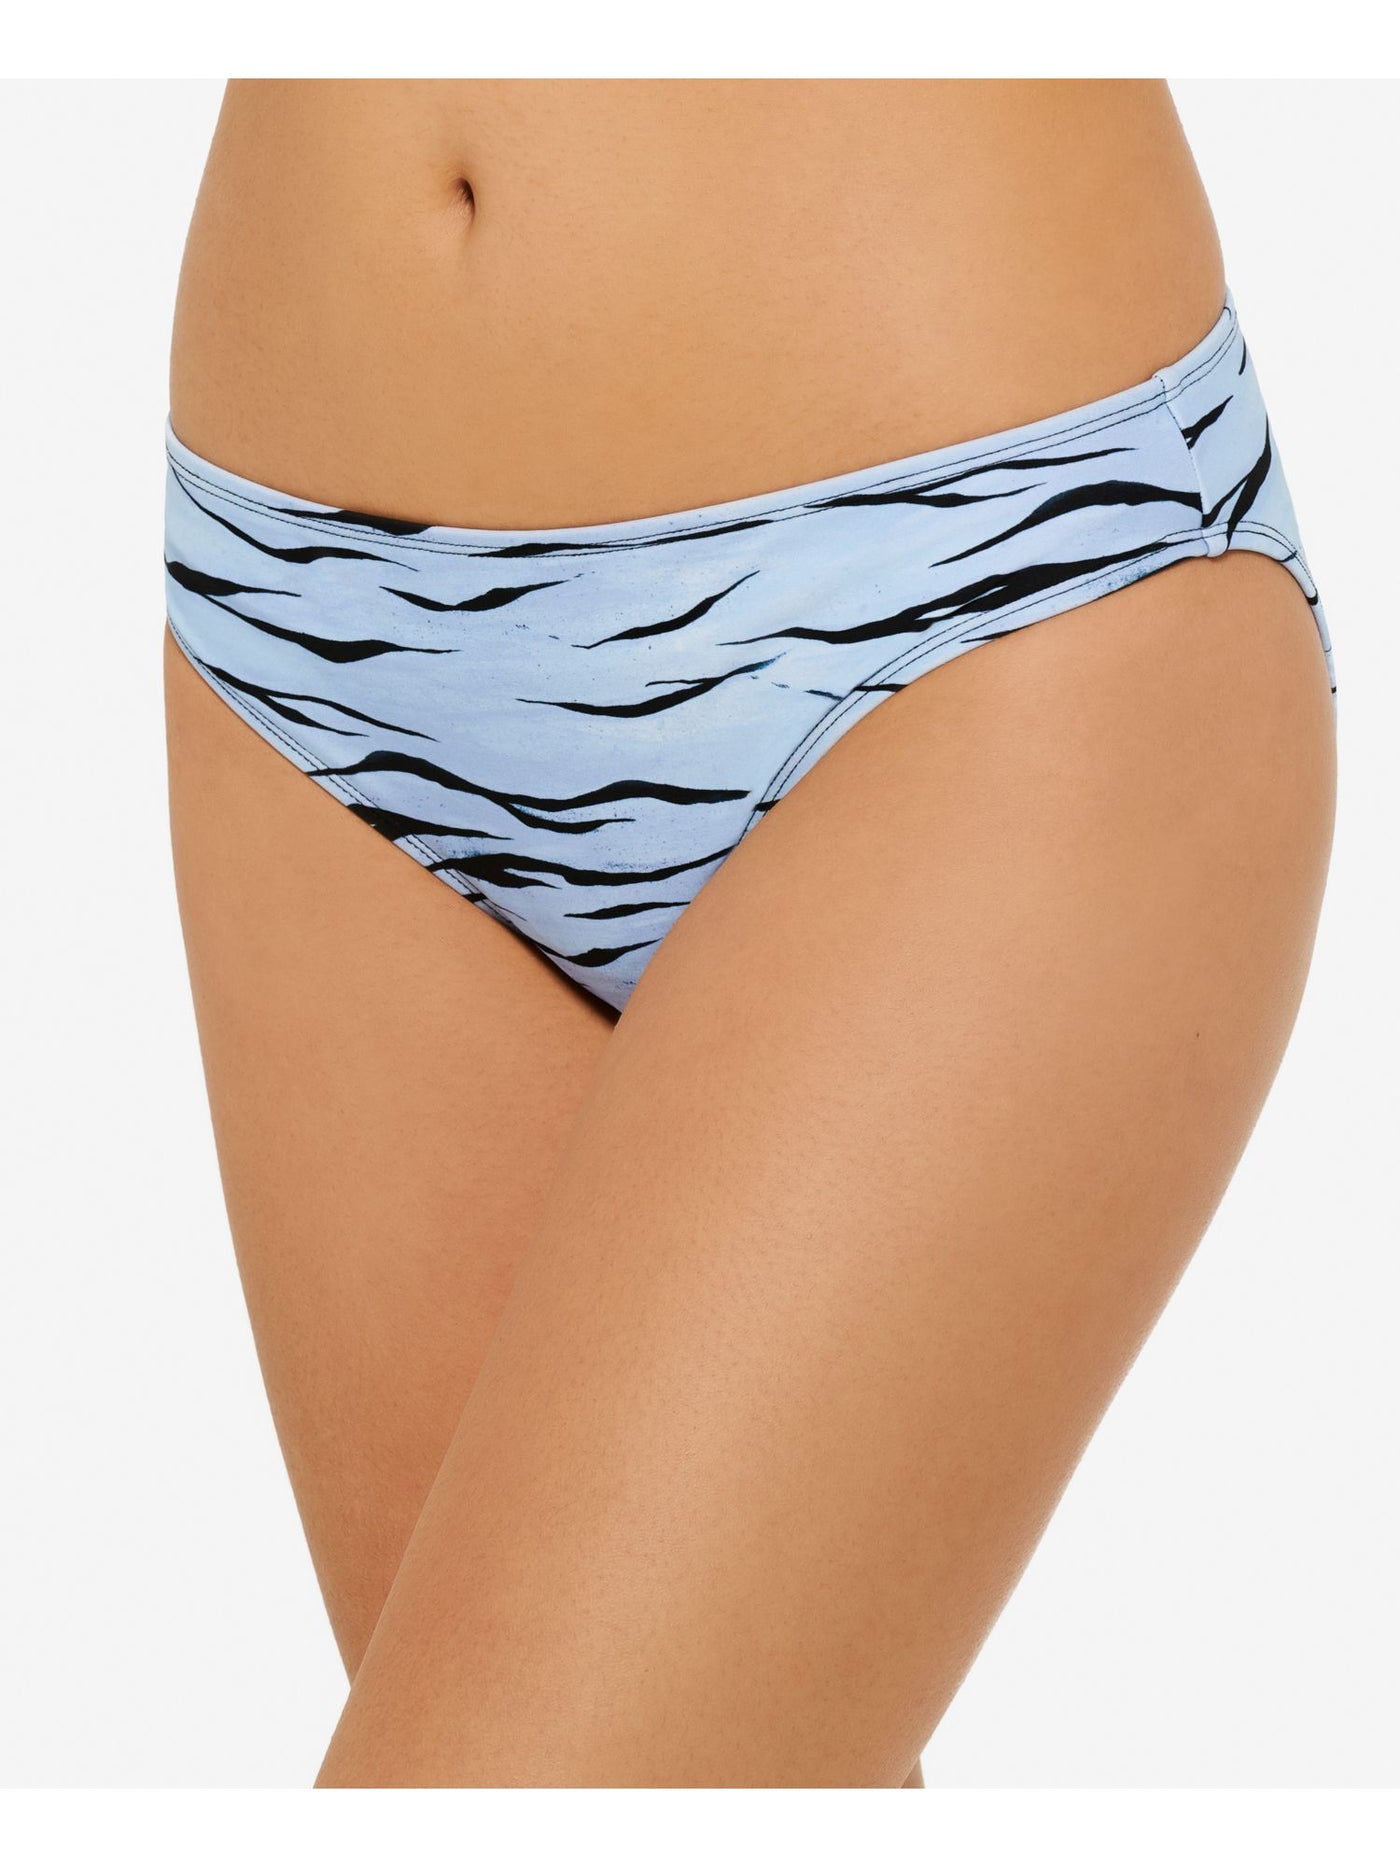 HULA HONEY Women's Light Blue Animal Print Lined Wild Cat Hipster Swimsuit Bottom S